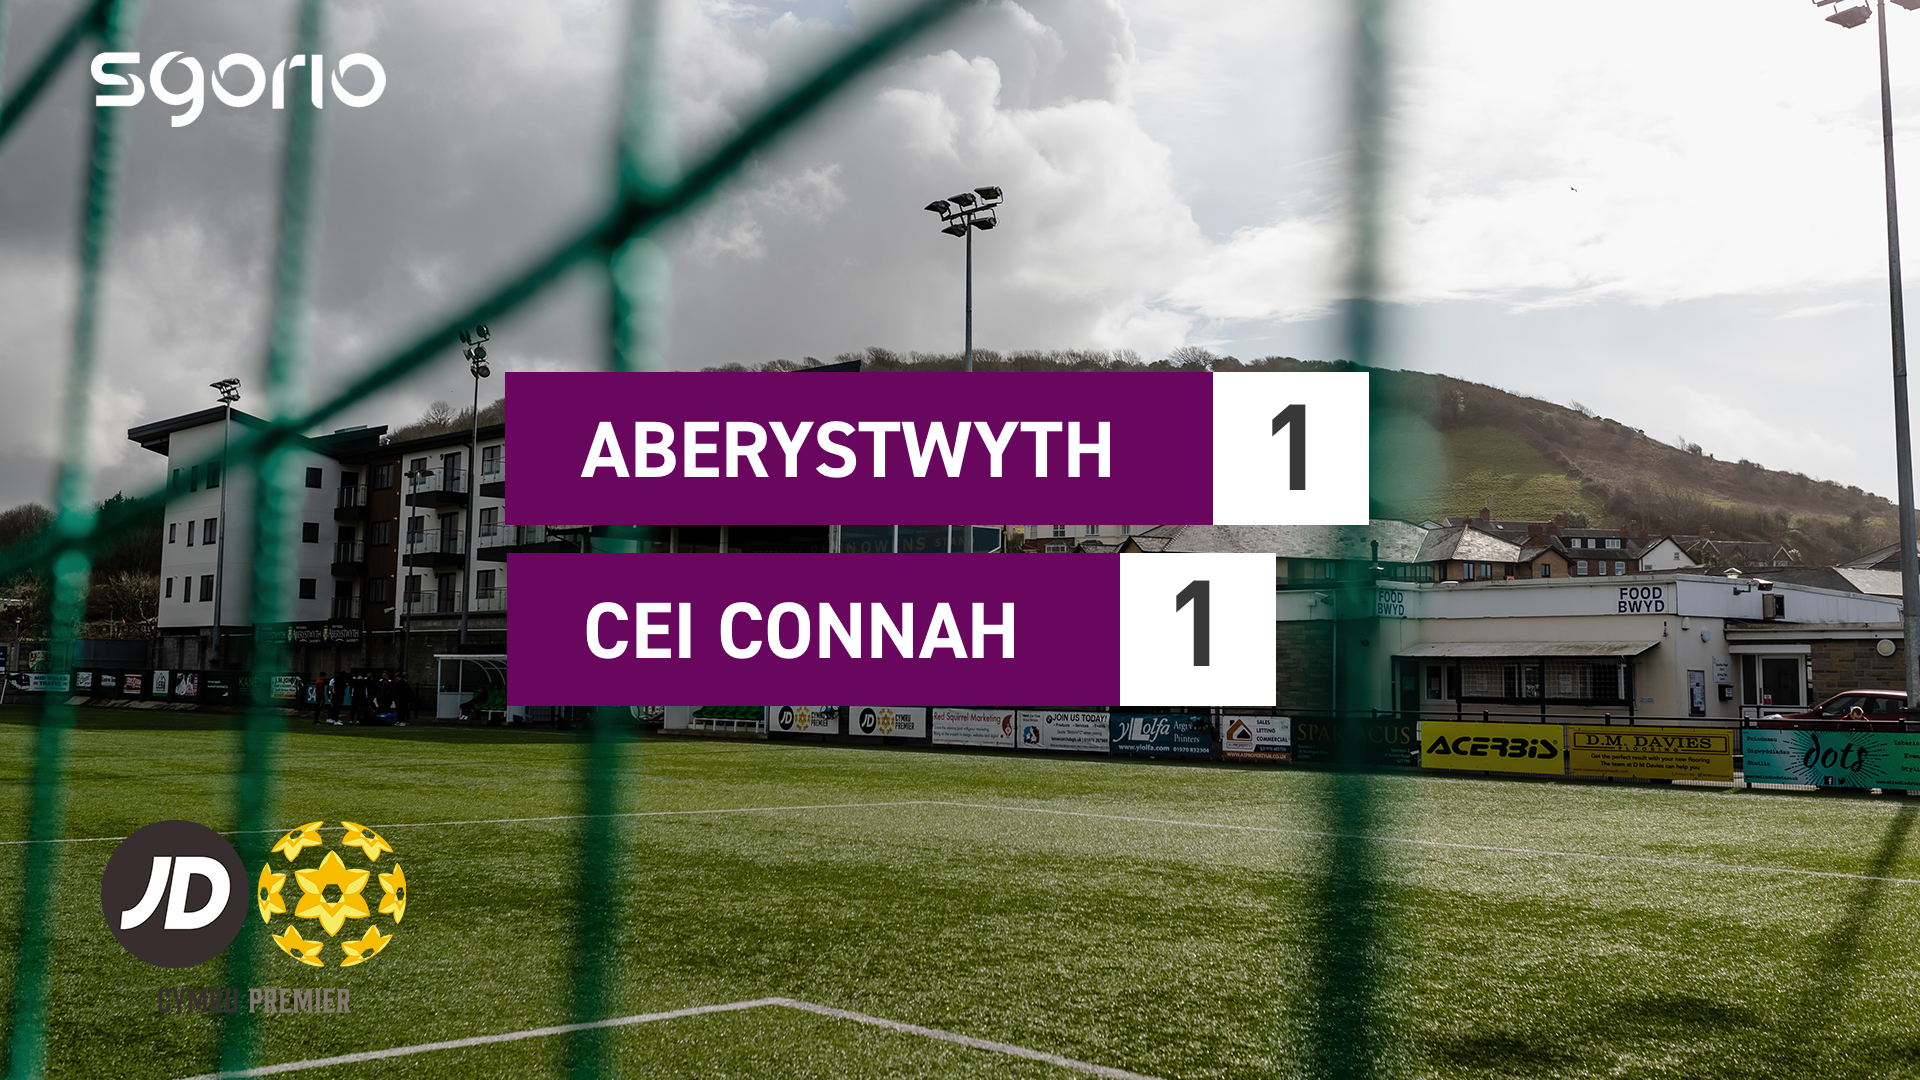 Aberystwyth 1-1 Cei Connah